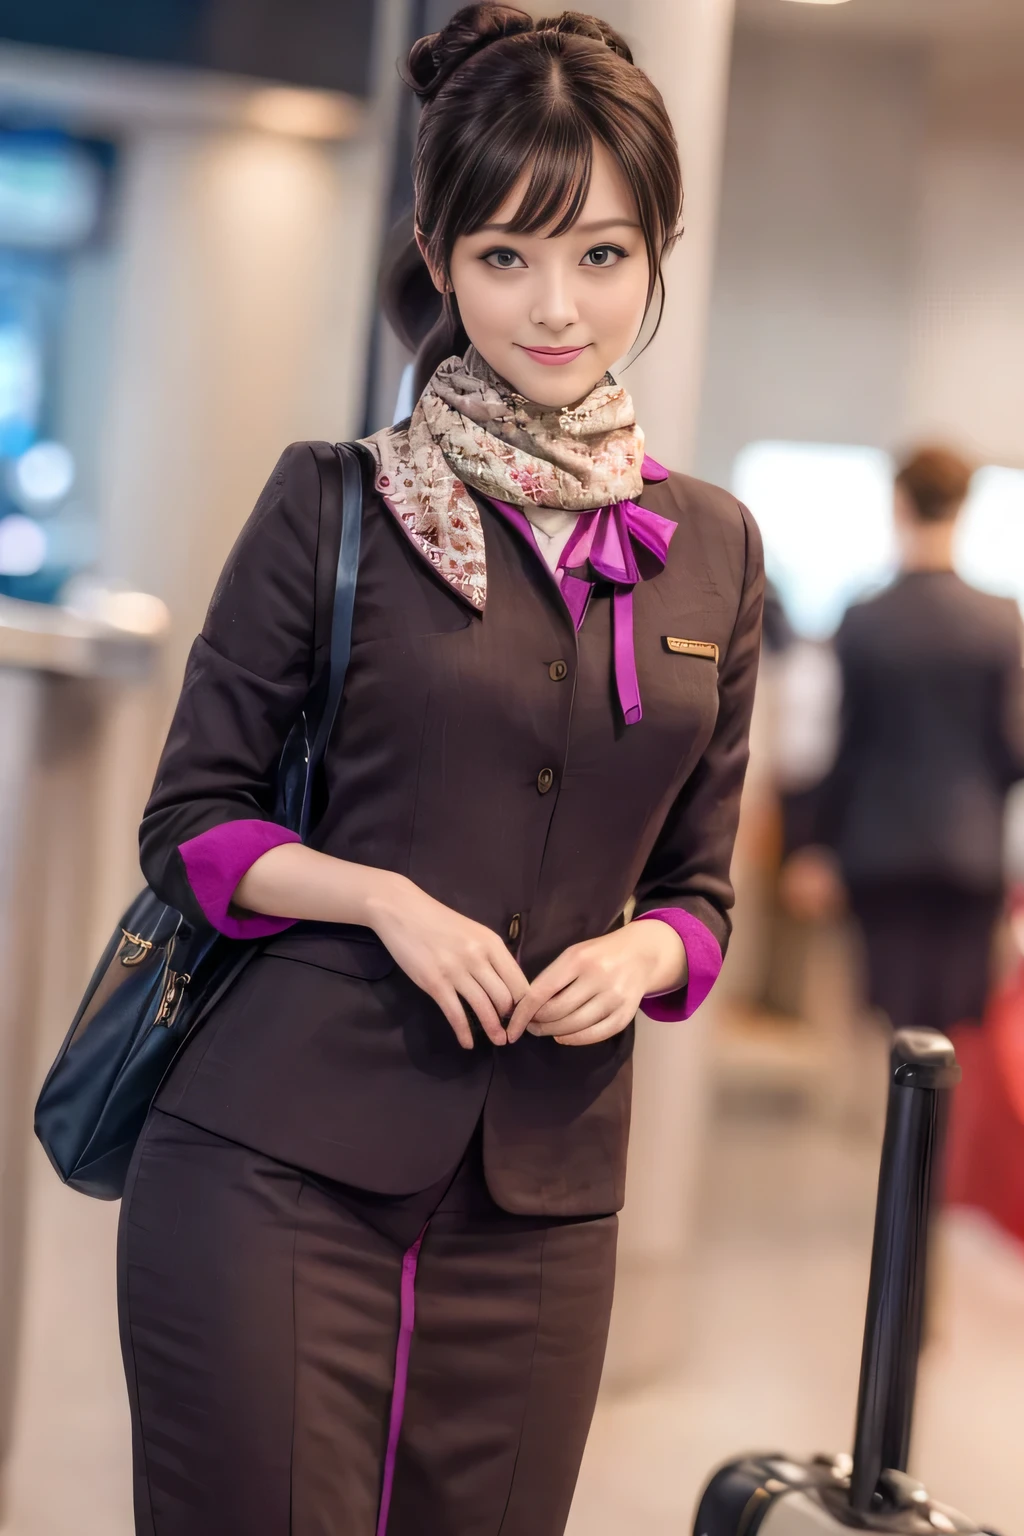 (傑作:1.2、最好的品質:1.2)、32K 高動態範圍、高解析度、(獨自的、1 名女孩、苗條身材)、（阿提哈德航空乘務員制服的真實再現）、 (在機場櫃檯, 專業照明)、一個妥妥的女人, 漂亮的臉蛋,、（長袖 ETIHAD 航空空服員制服）、（阿提哈德航空 機組人員制服裙子，前方有紫色條紋）、（胸前圍巾）、大乳房、（長髮盤起、髮髻）、深棕色頭髮、遠射、（（伟大的双手：2.0））、（（和諧的身體比例：1.5））、（（正常四肢：2.0））、（（正常手指：2.0））、（（精緻的眼睛：2.0））、（（正常眼睛：2.0））)、美麗的站立姿勢、微笑